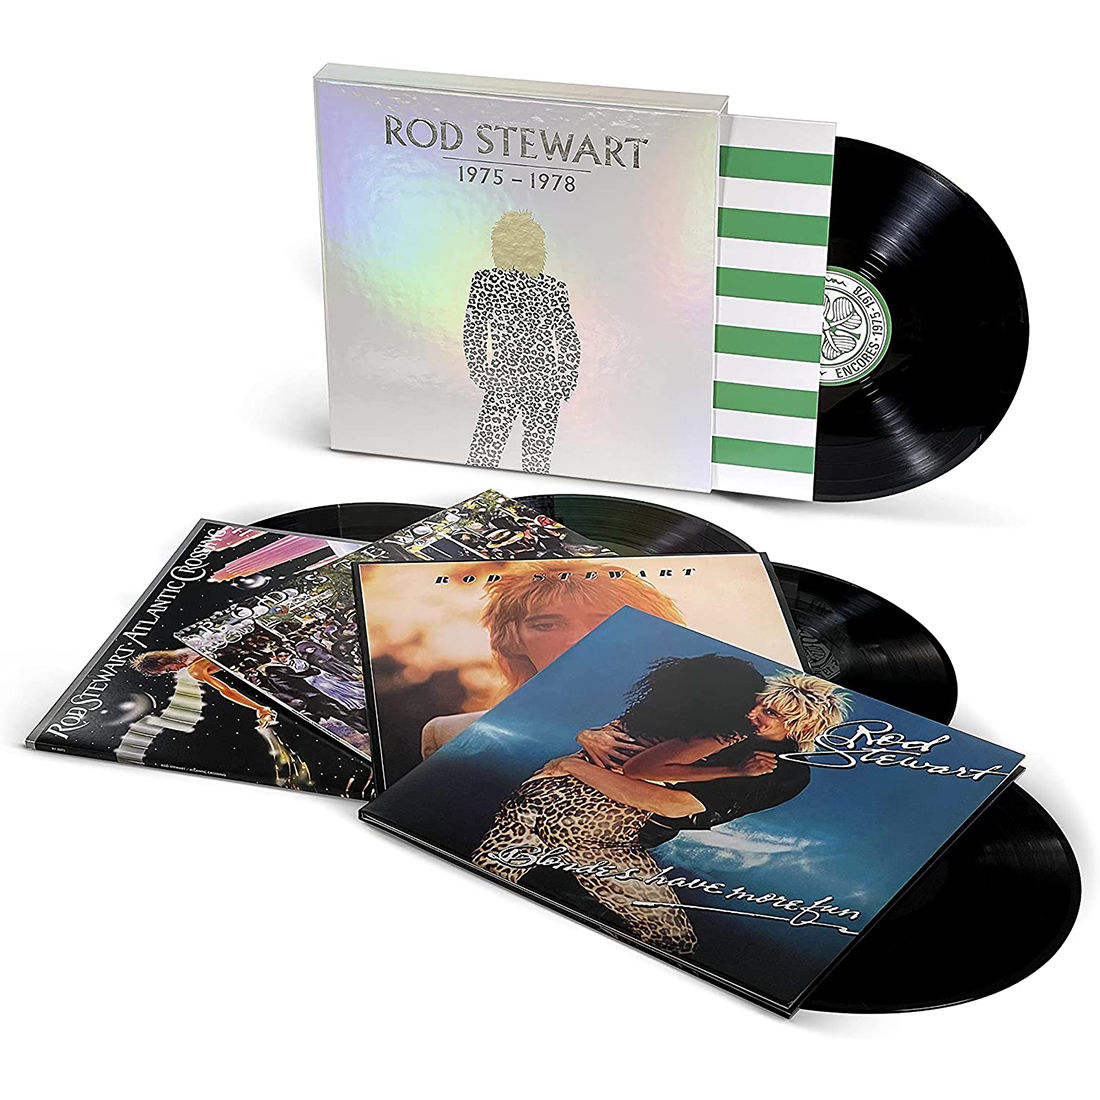 Rod Stewart - Rod Stewart: 1975-1978: 5LP Box Set - Sound of Vinyl